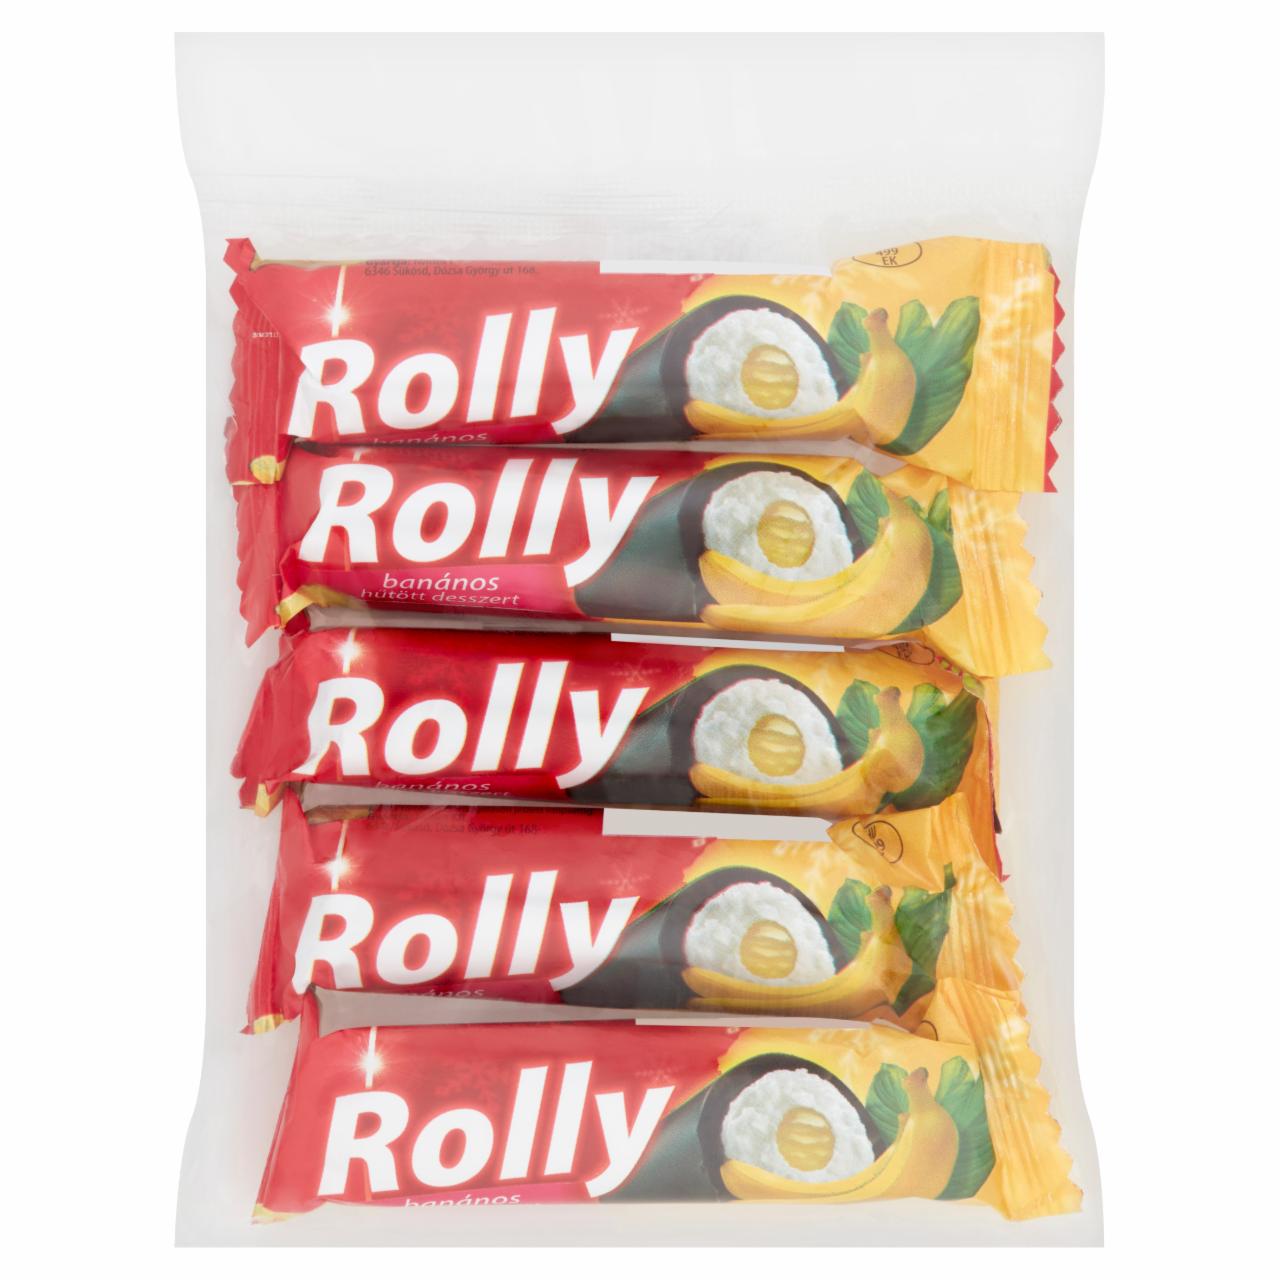 Képek - Rolly banános hűtött desszert 5 x 30 g